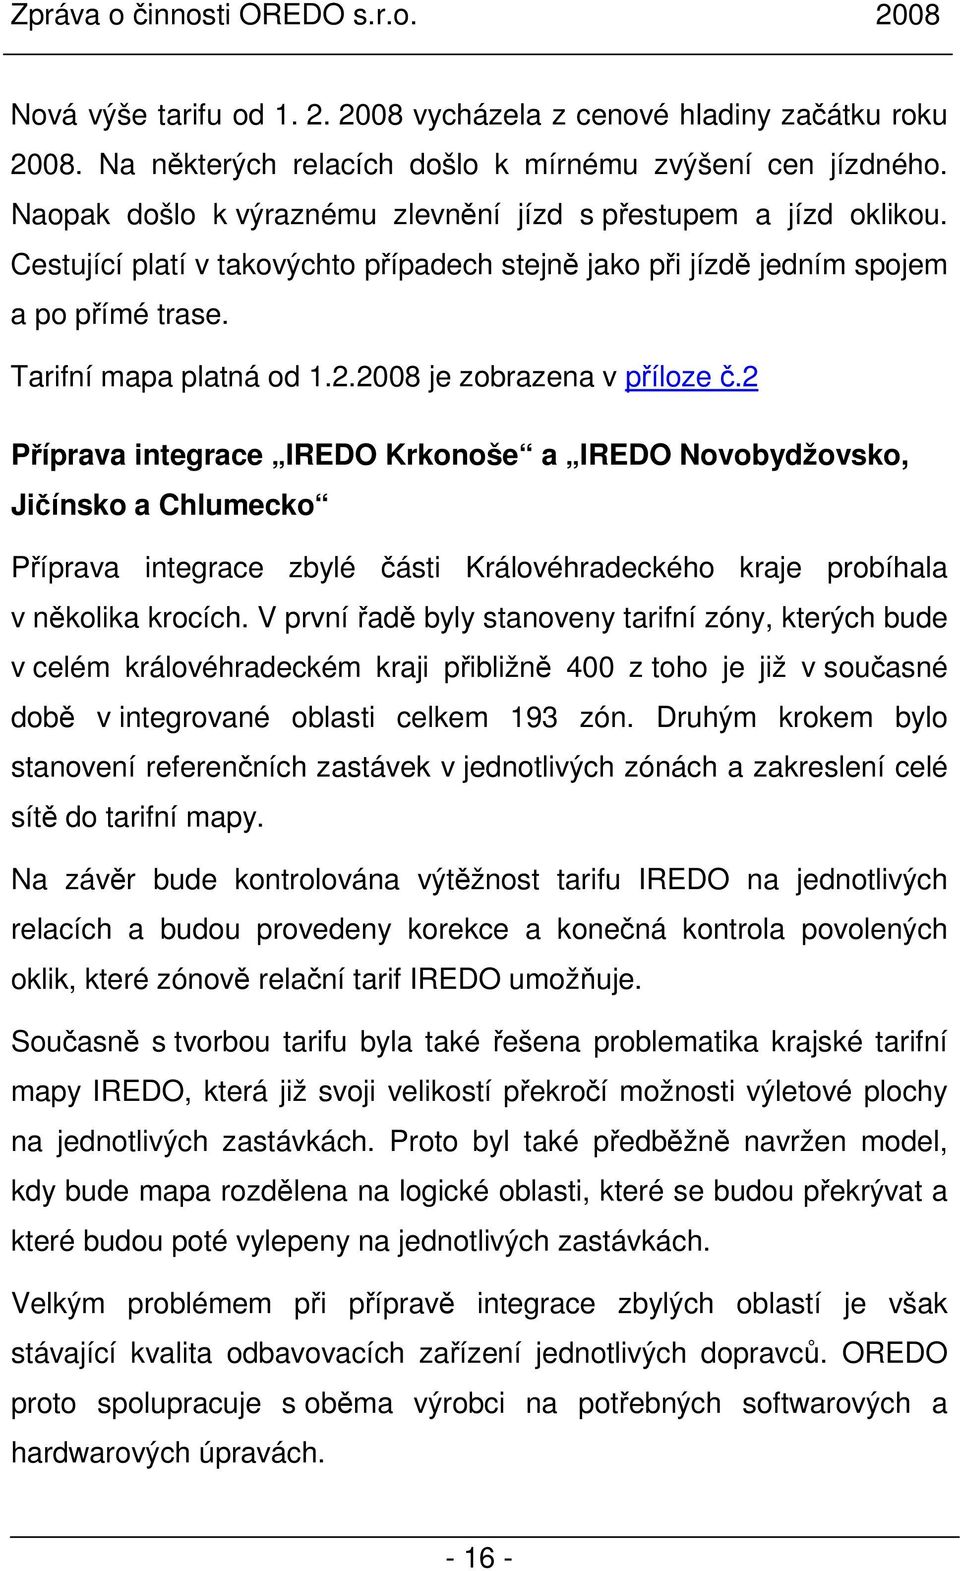 2008 je zobrazena v příloze č.2 Příprava integrace IREDO Krkonoše a IREDO Novobydžovsko, Jičínsko a Chlumecko Příprava integrace zbylé části Královéhradeckého kraje probíhala v několika krocích.